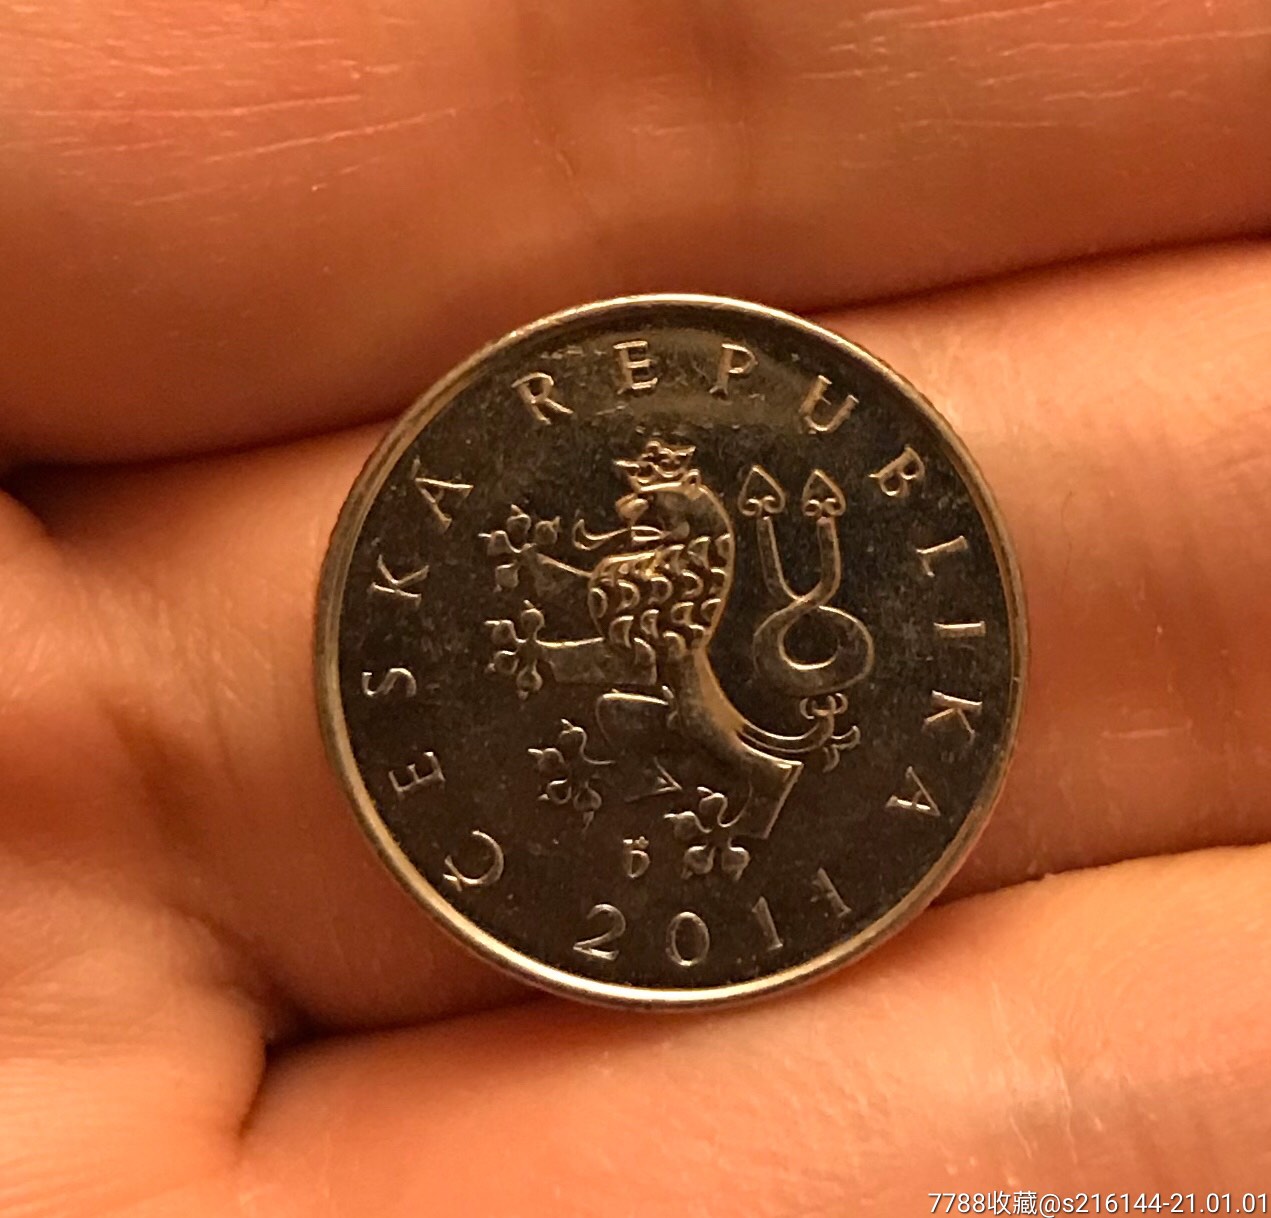 2011年捷克硬币/1克朗